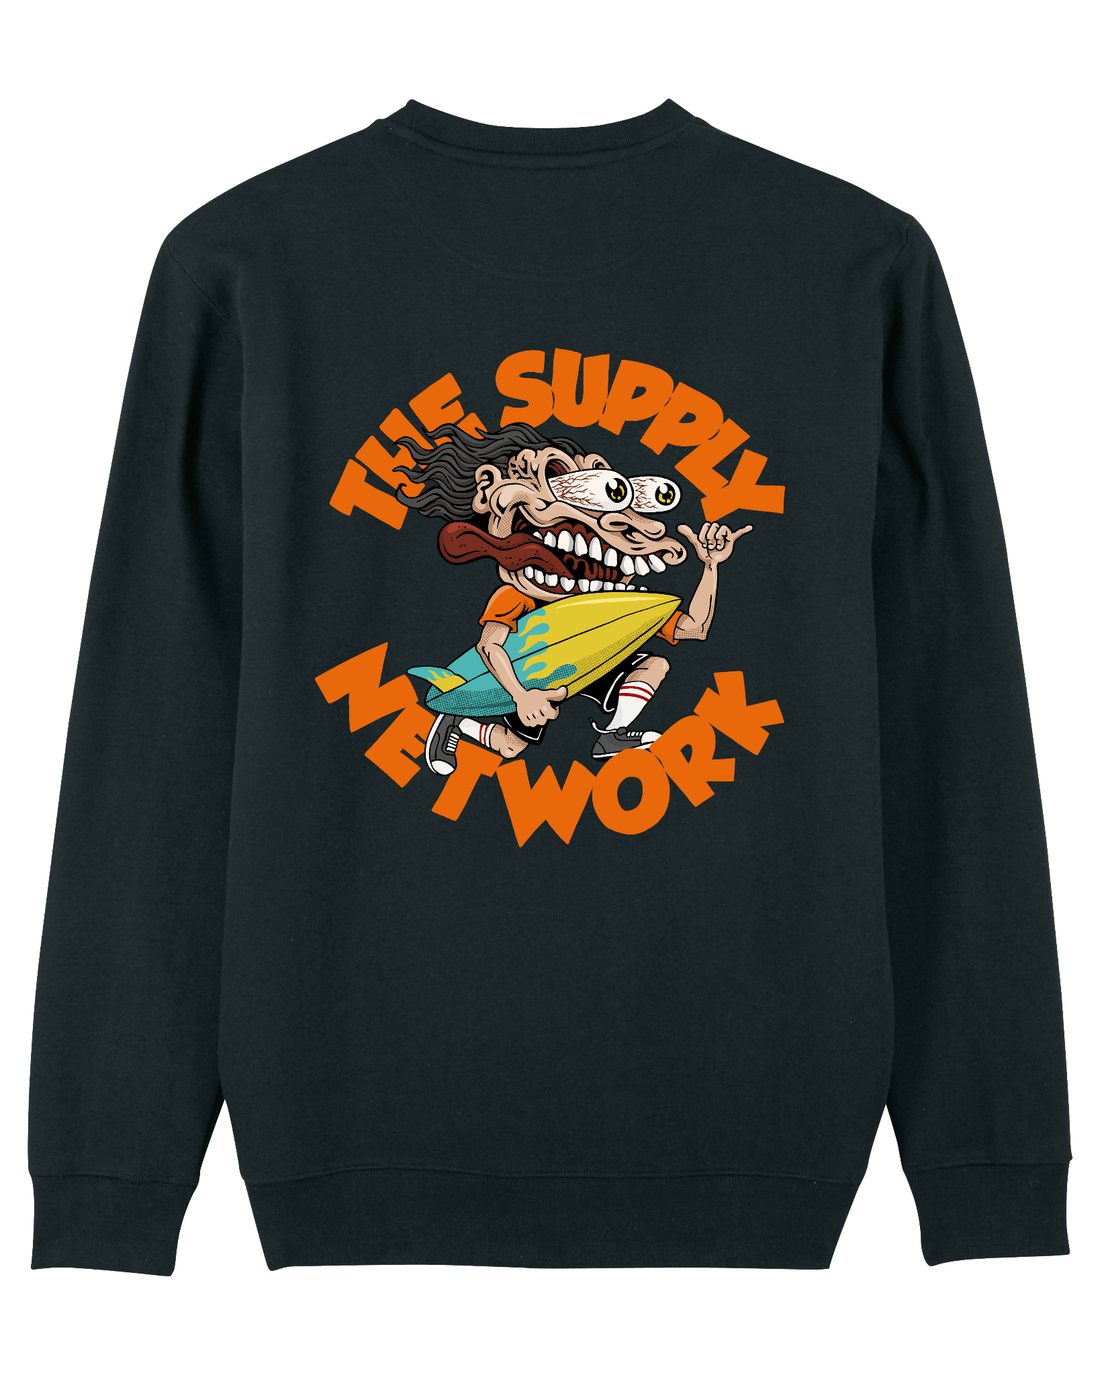 Black Skater Sweatshirt, Surf Crazy Back Print